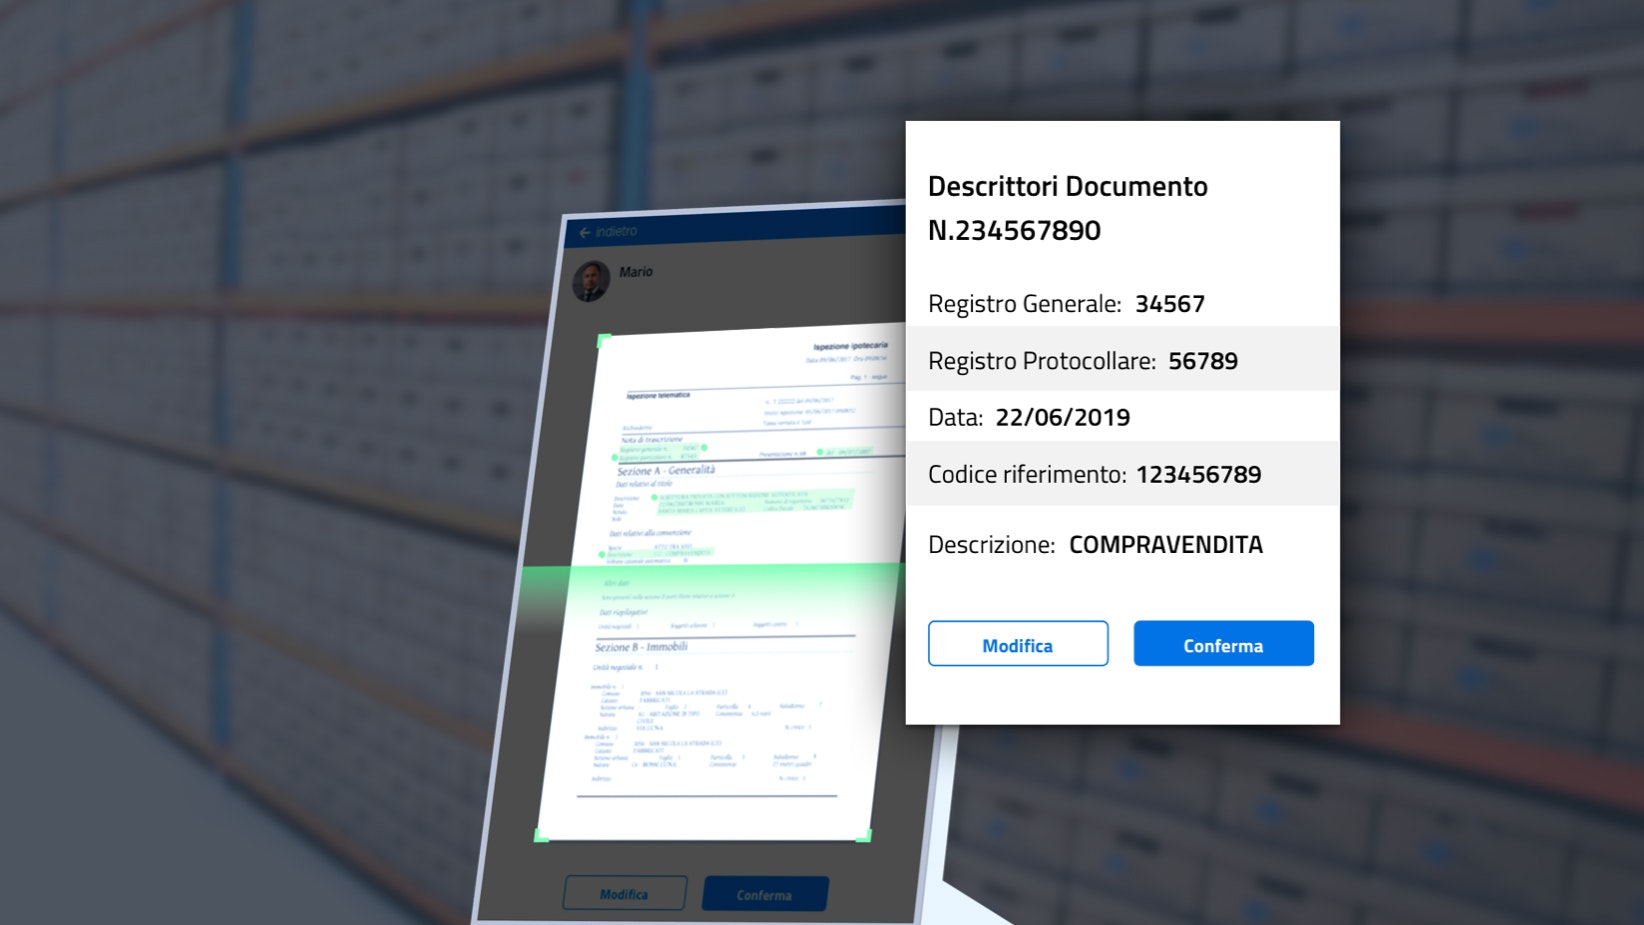 Sketchin - Gli archivi pubblici italiani del futuro saranno super efficienti - Verifica dei documenti scansionati